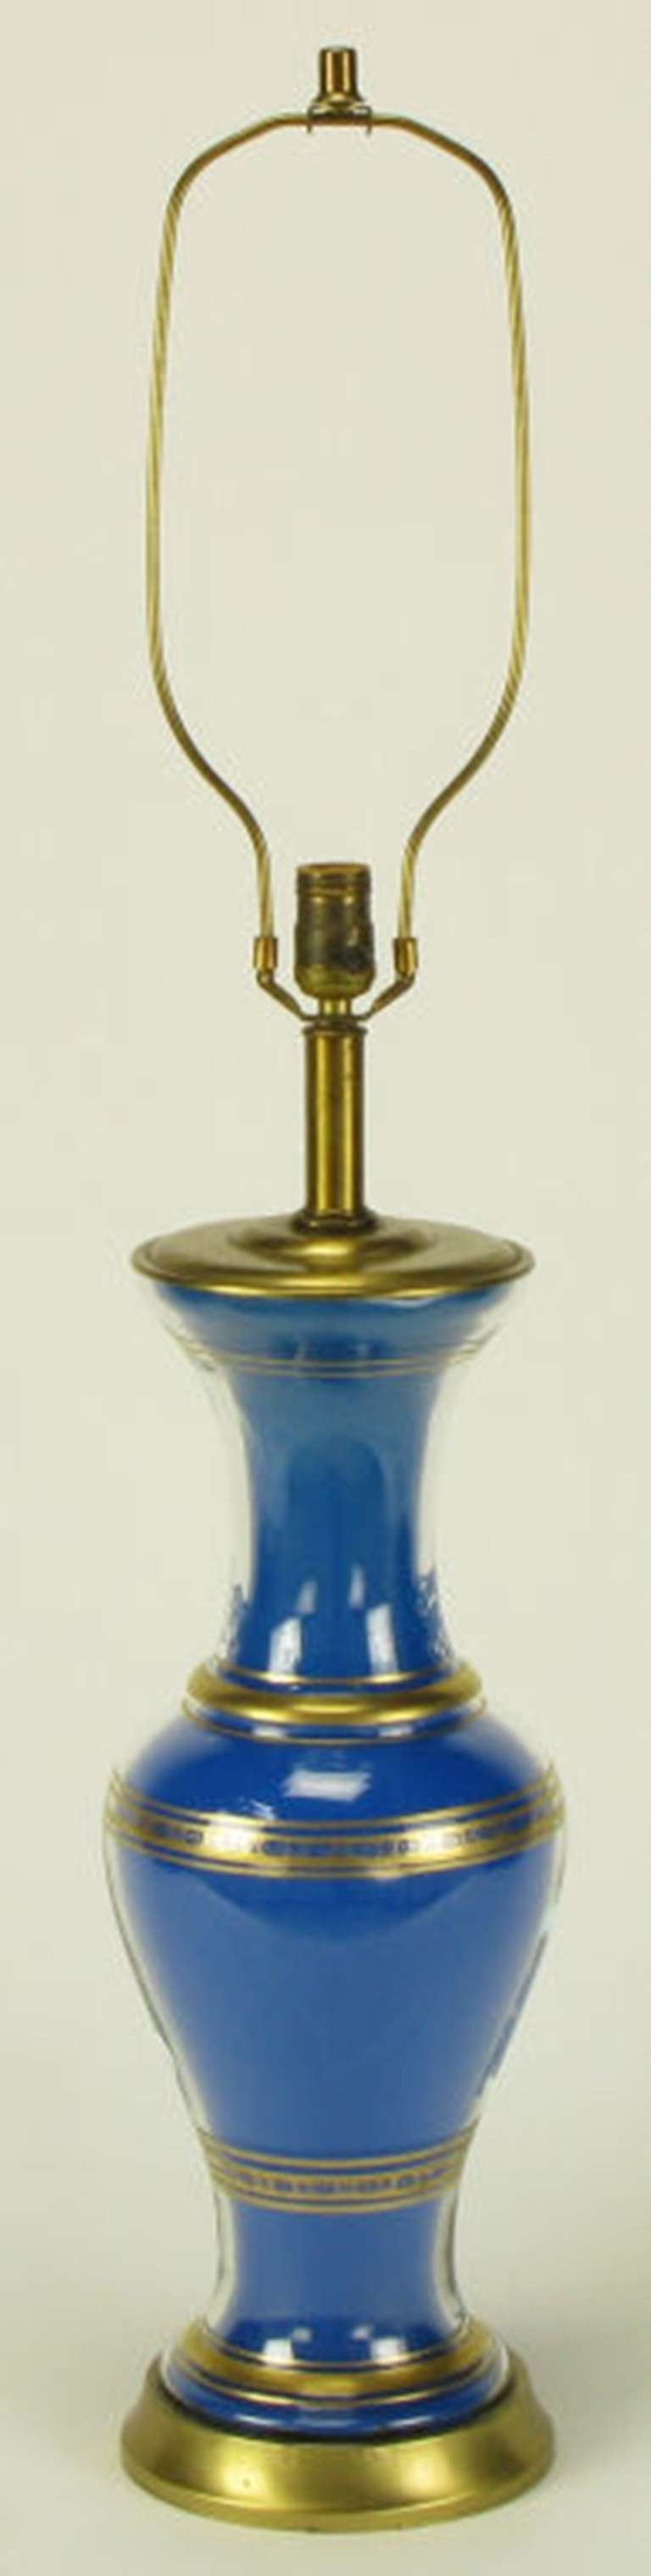 Paire de lampes de table en verre en forme de vase Frederick Cooper avec inserts inversés bleu royal. Détails dorés avec base, capuchon et tige en laiton brossé. Prise et harpe en laiton, signées et recâblées.